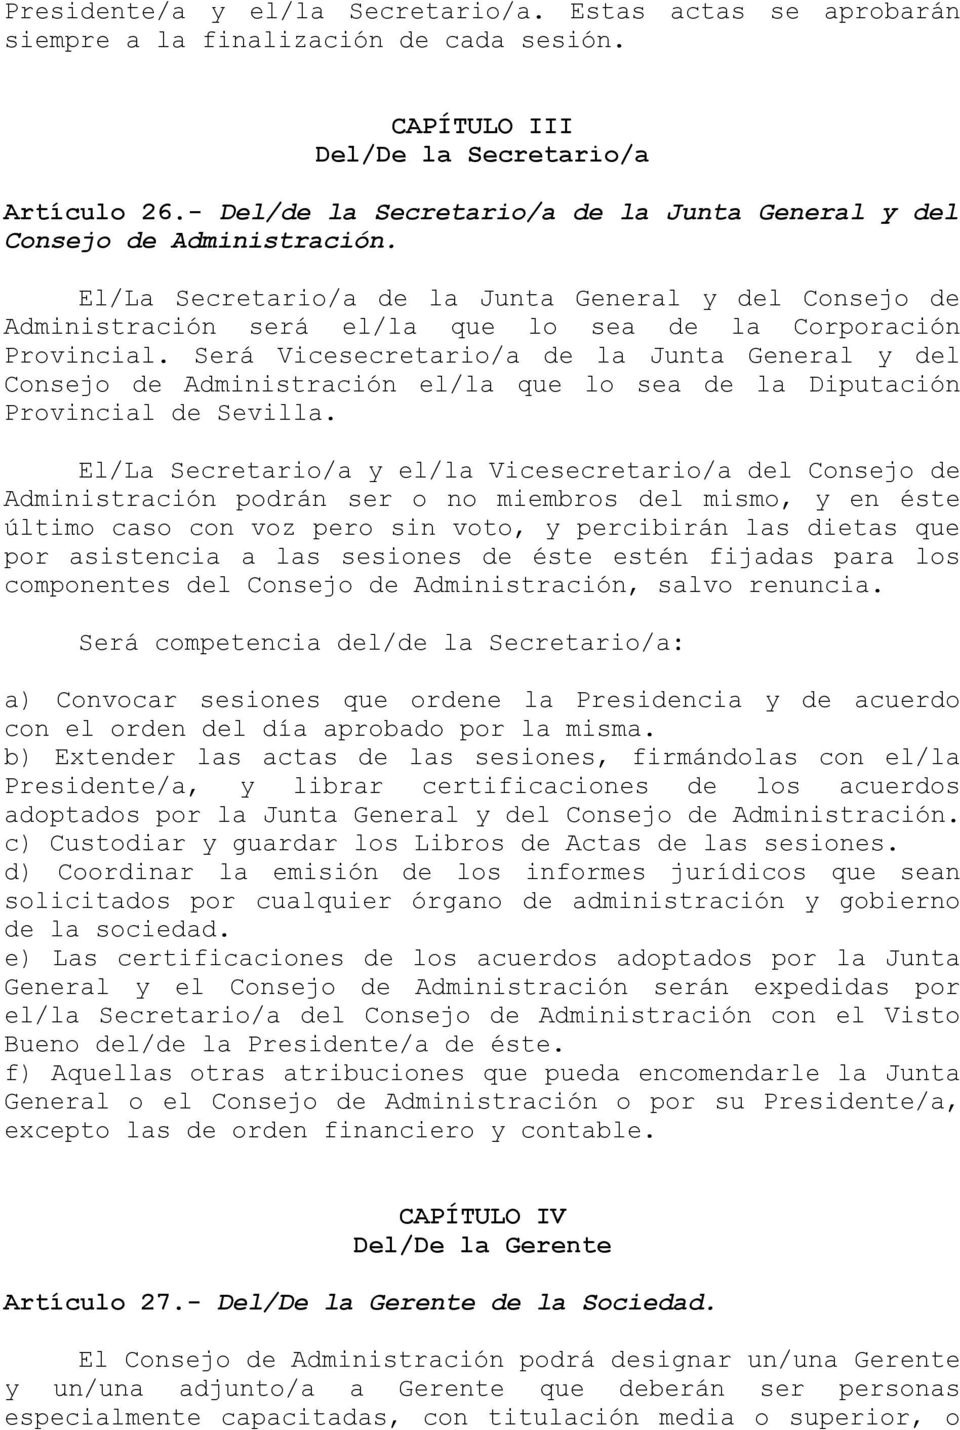 Será Vicesecretario/a de la Junta General y del Consejo de Administración el/la que lo sea de la Diputación Provincial de Sevilla.